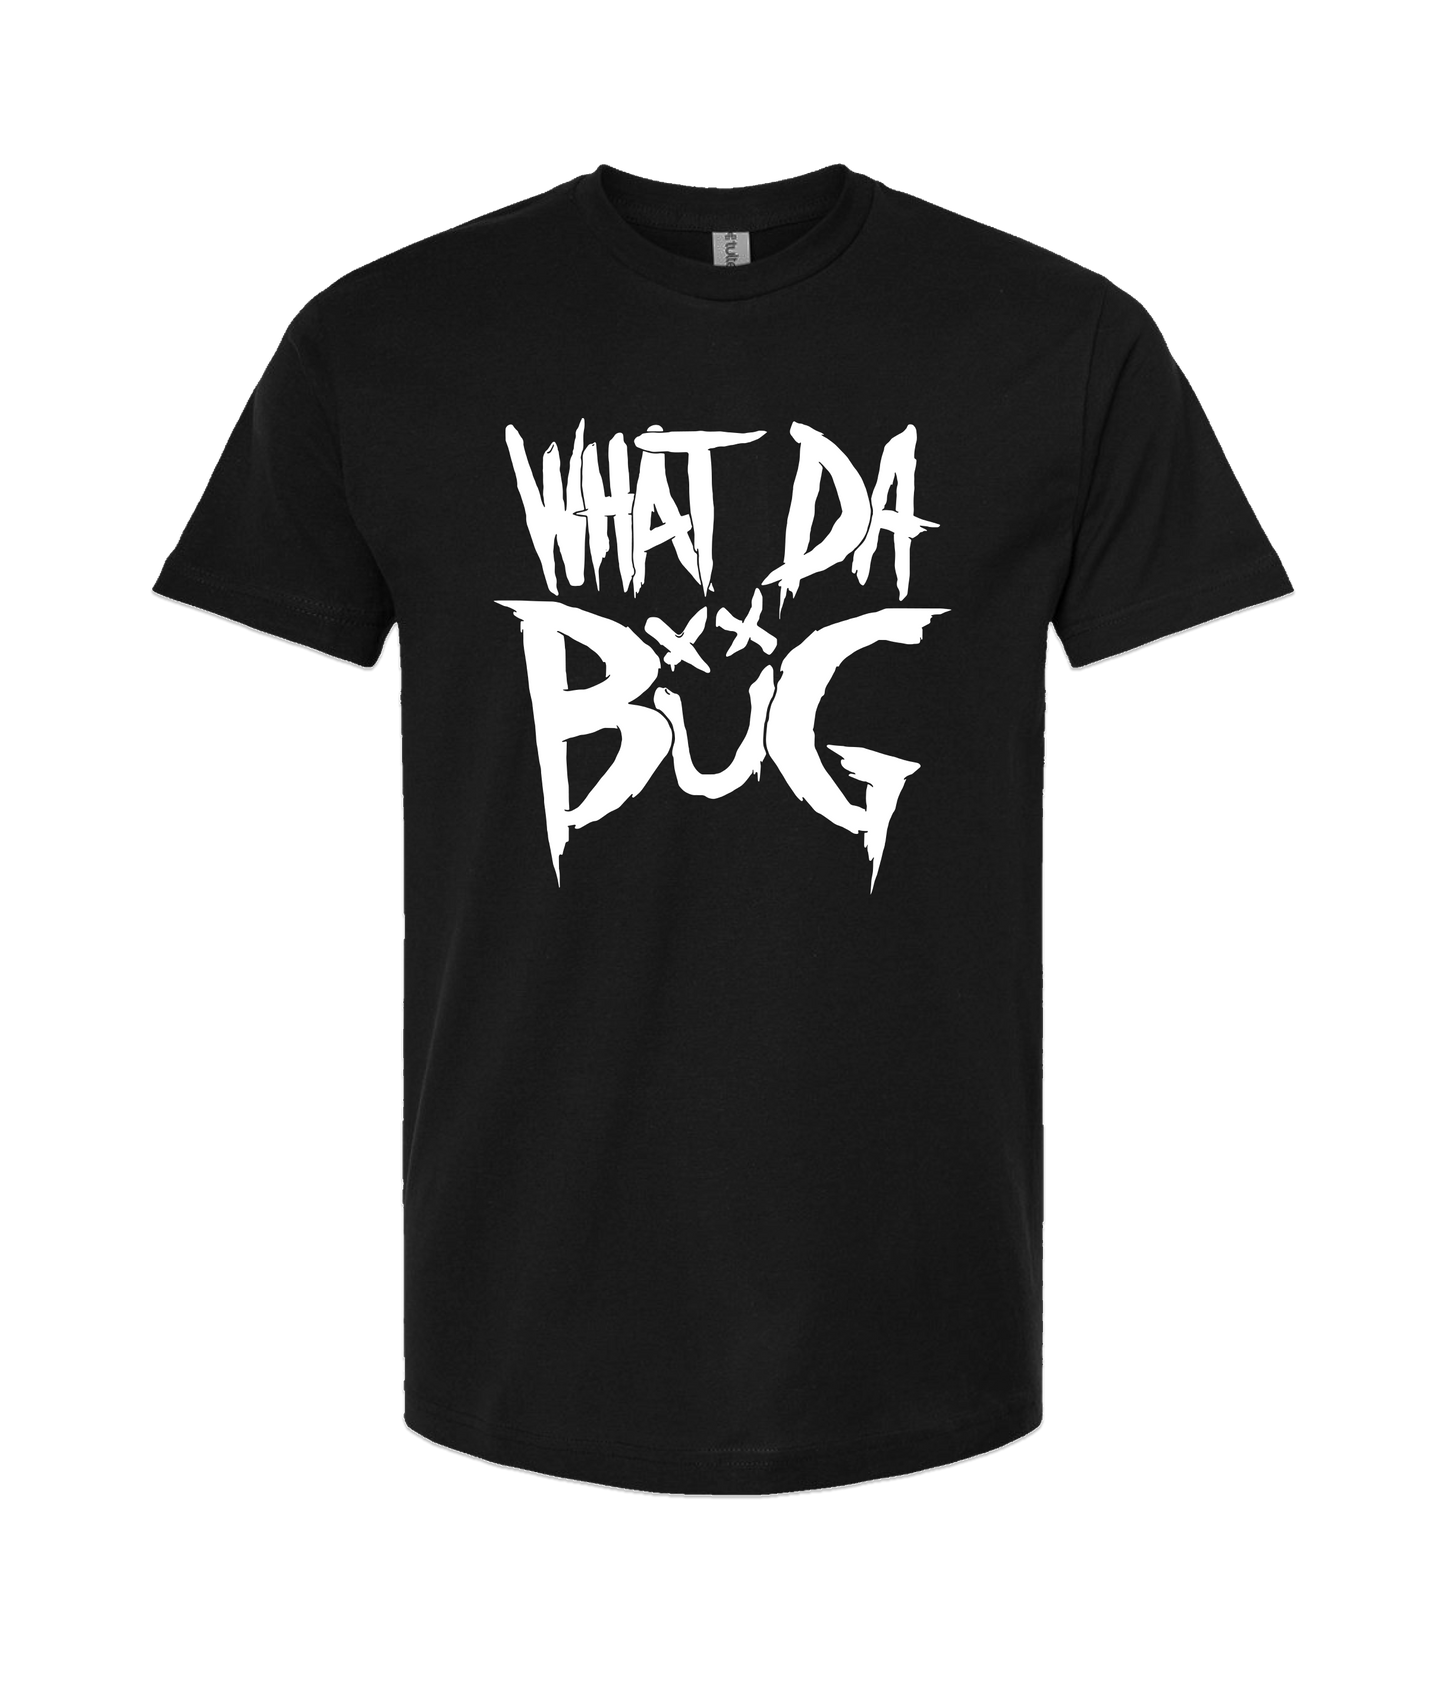 WhatDaBuG - Logo - Black T-Shirt